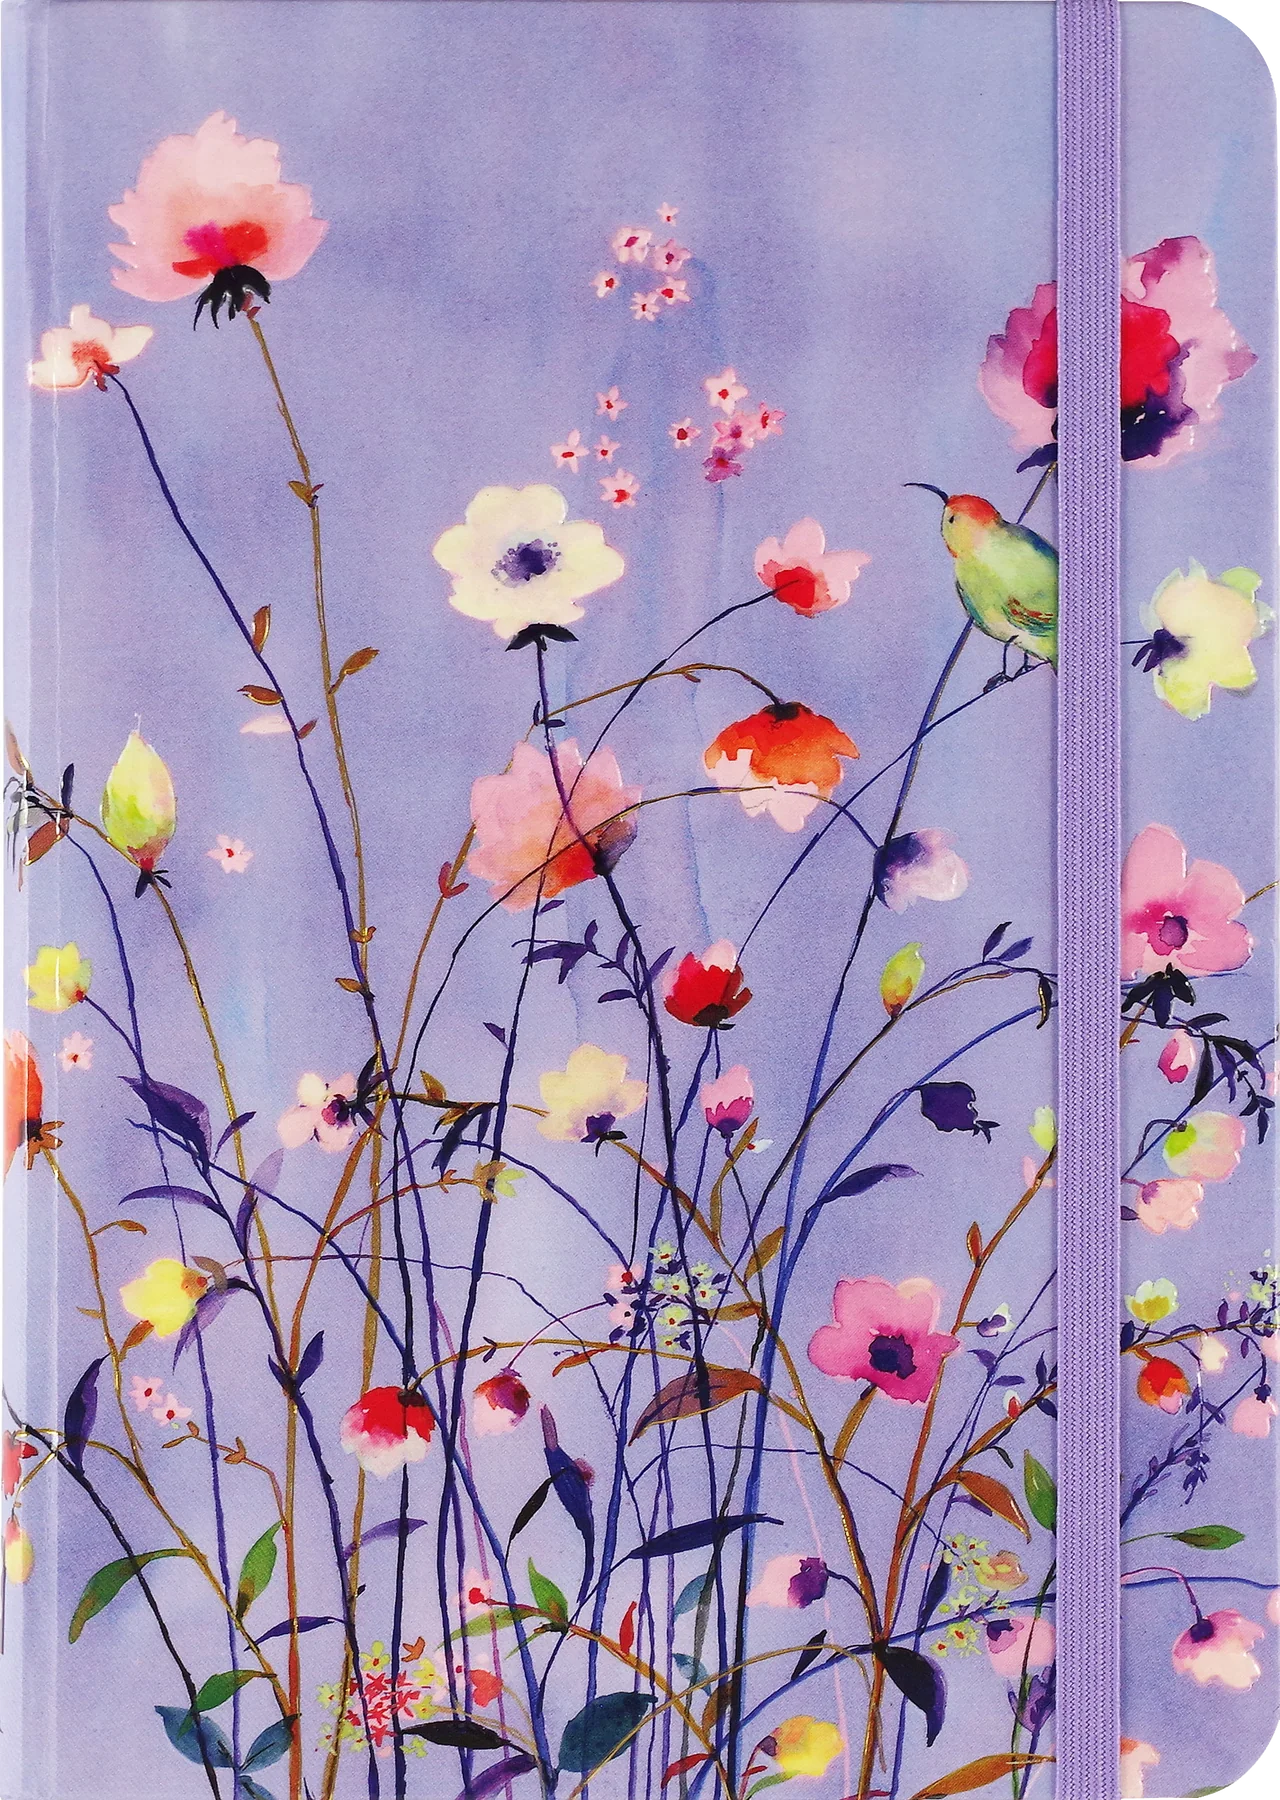 Lavender Wildflowers Journal